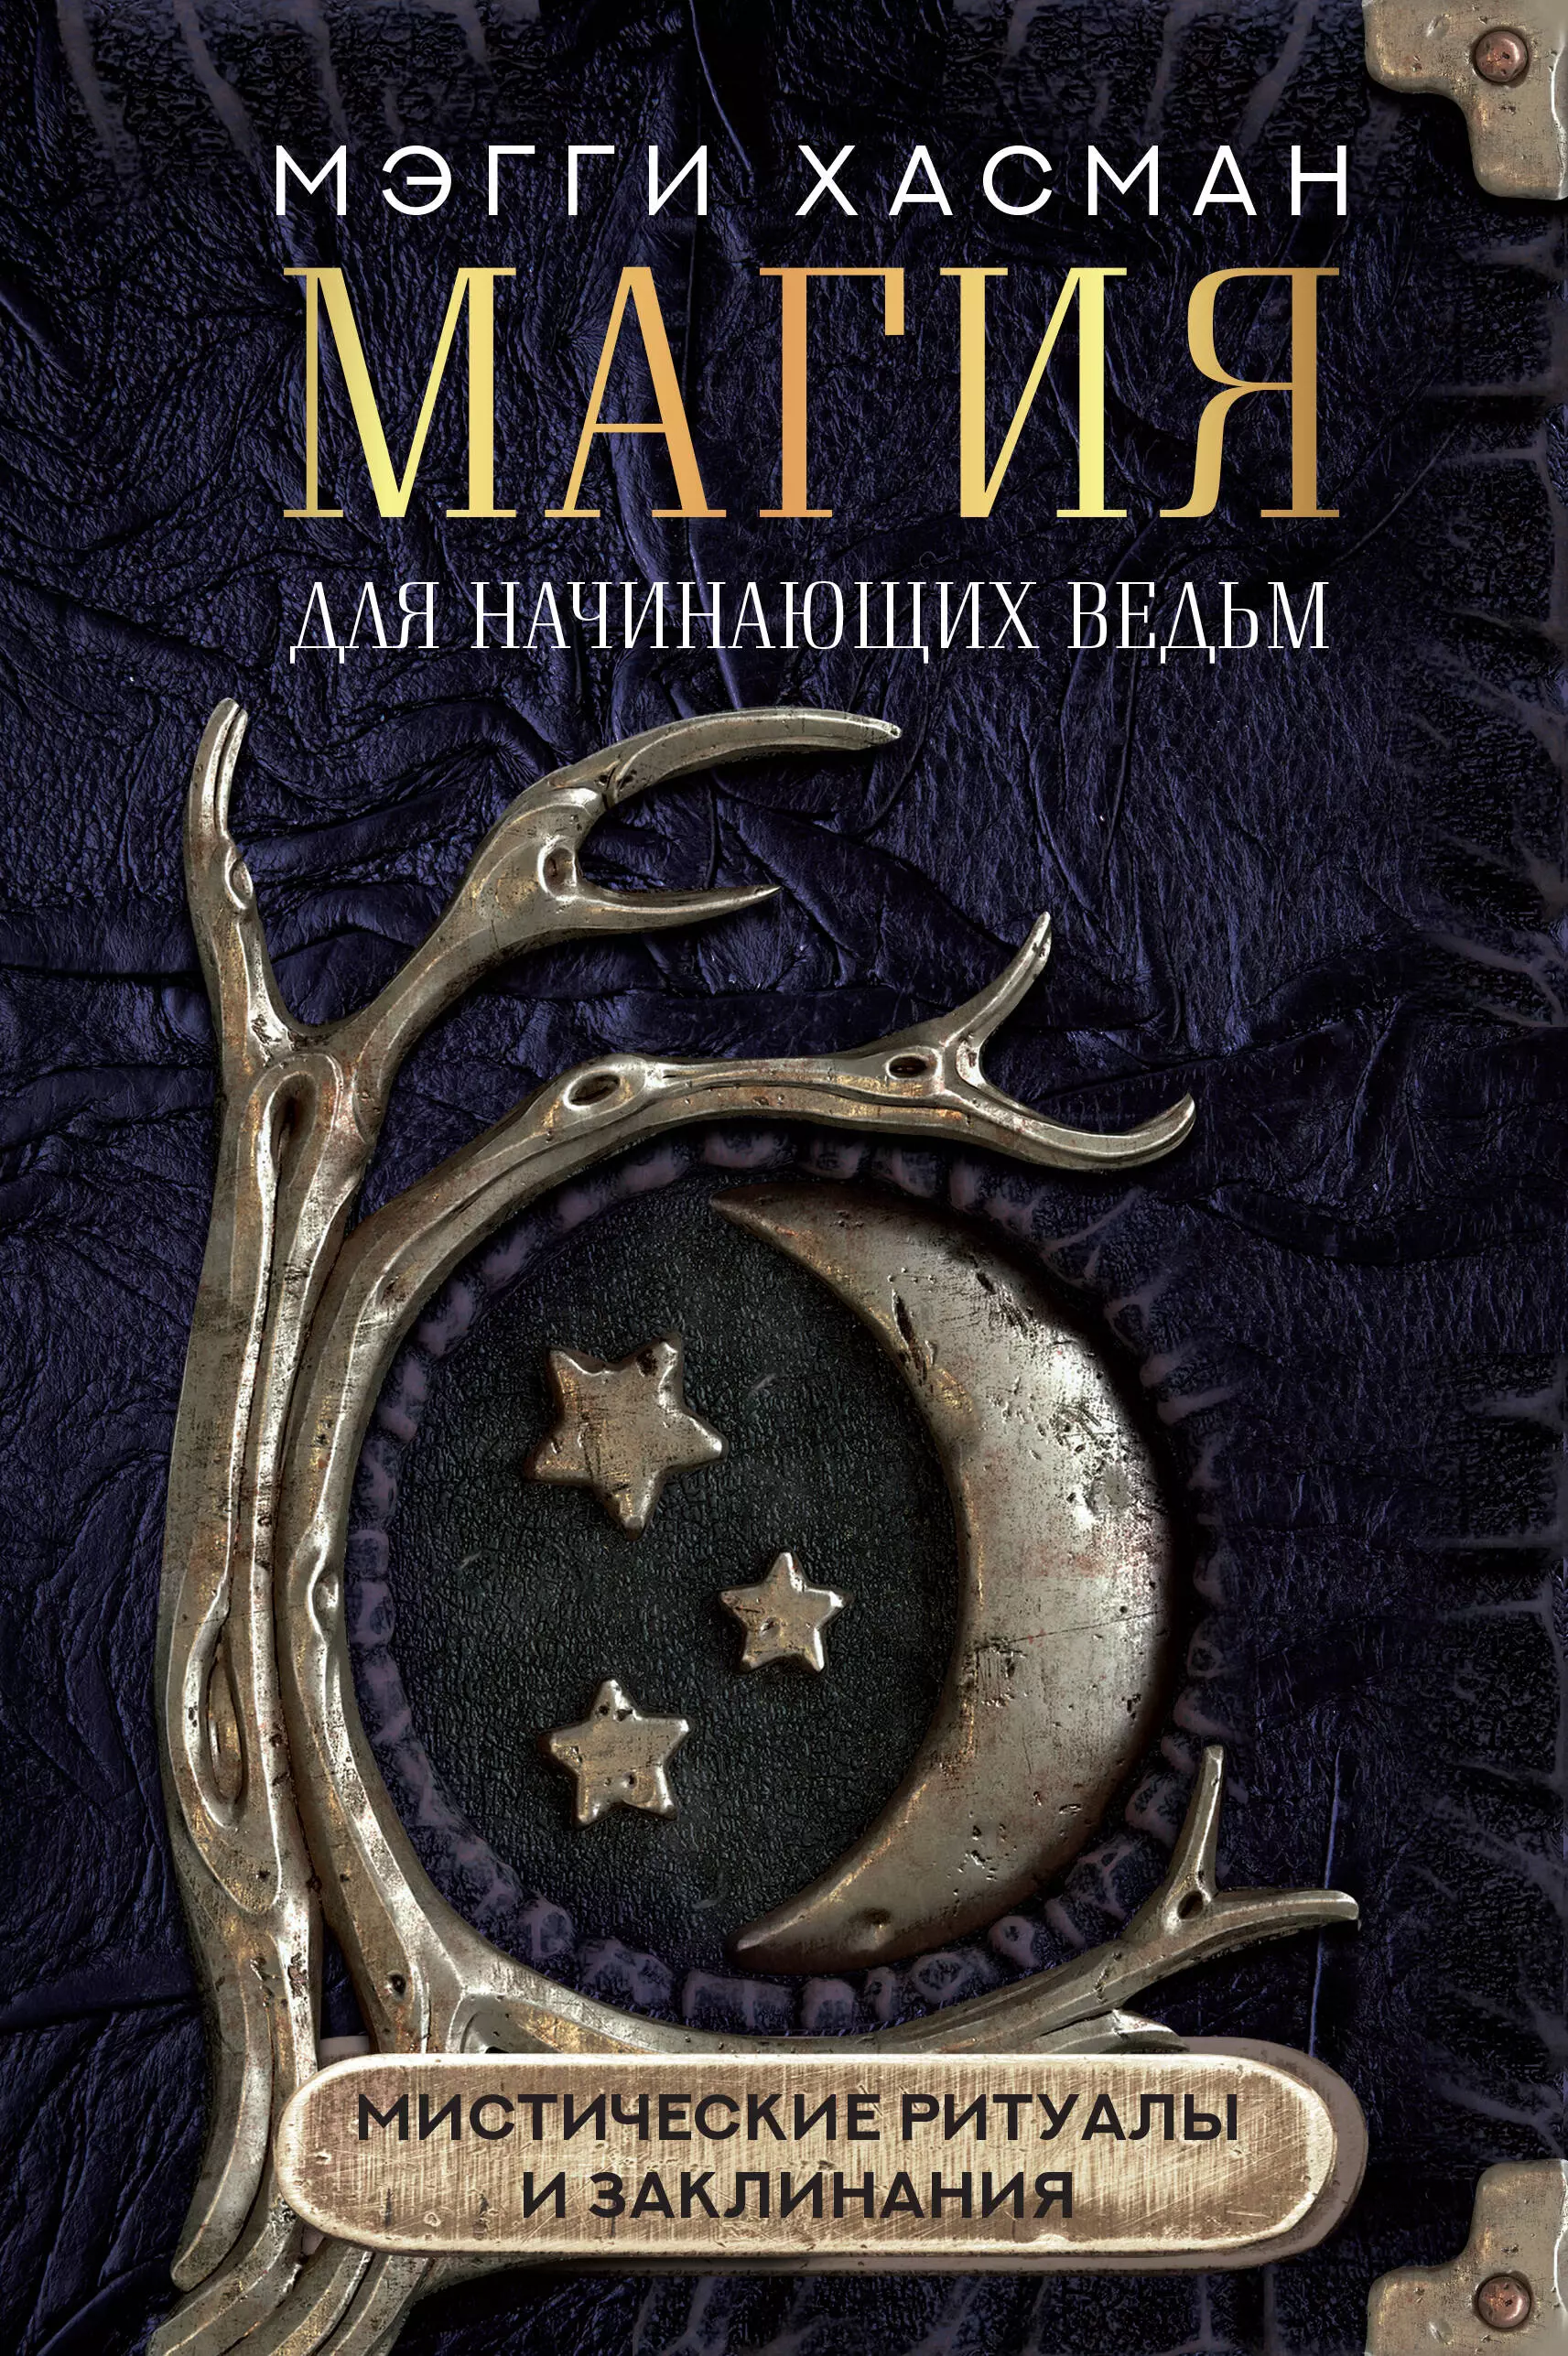 Хасман Мэгги - Магия для начинающих ведьм: мистические ритуалы и заклинания